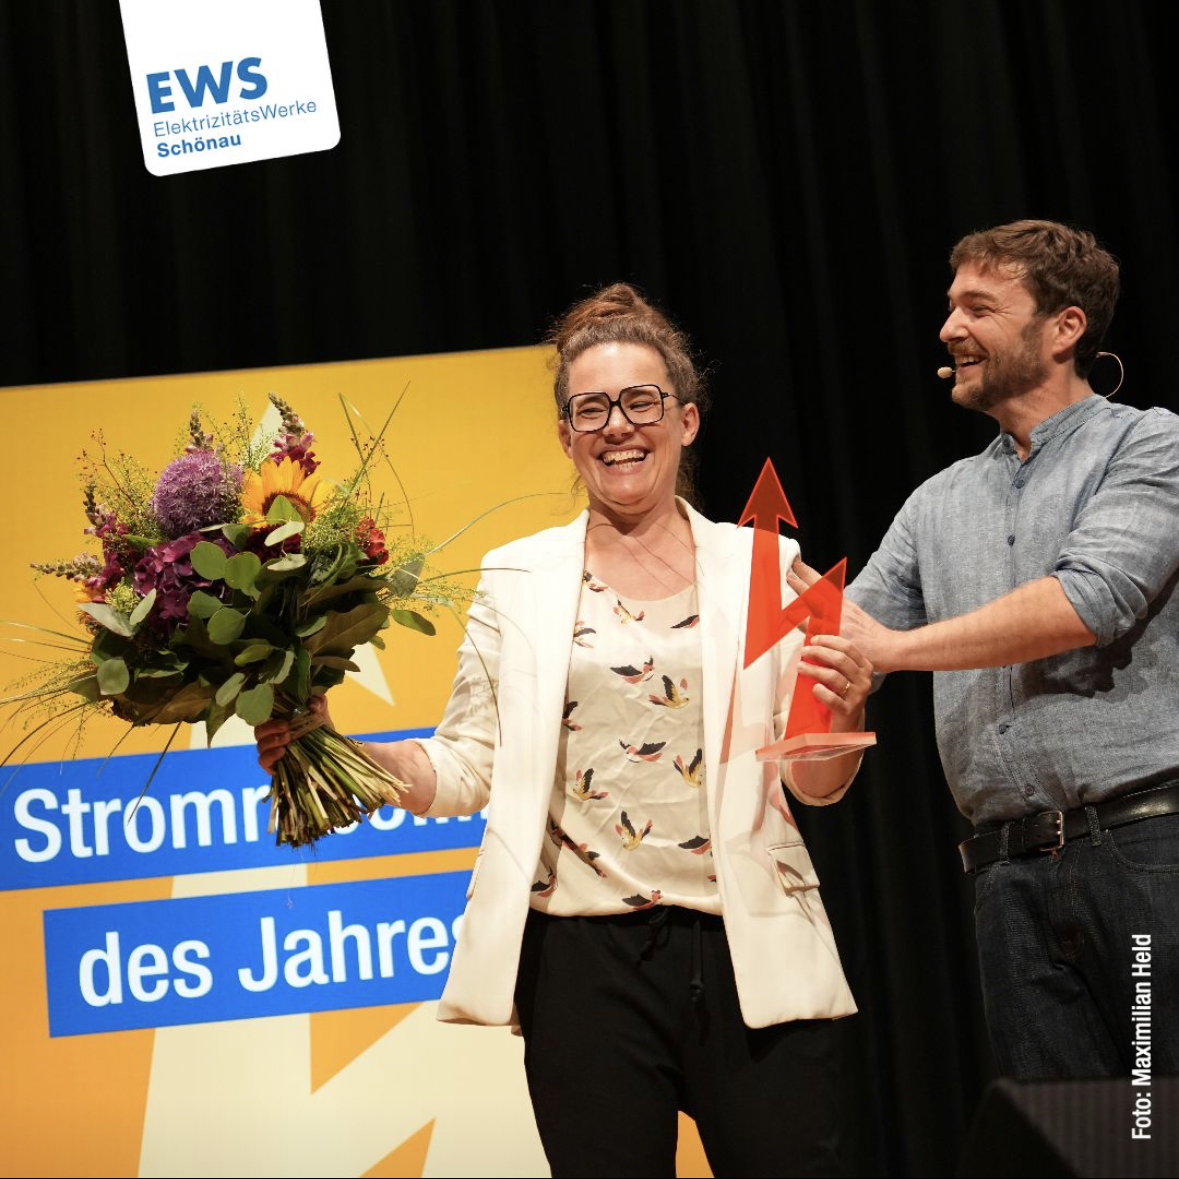 Foto der Preisübergabe, ich halte den roten Blitz, den Preis, und einen Blumenstrauß, den Sebastian Sladek mir übergibt. Foto: Albert Josef Schmidt